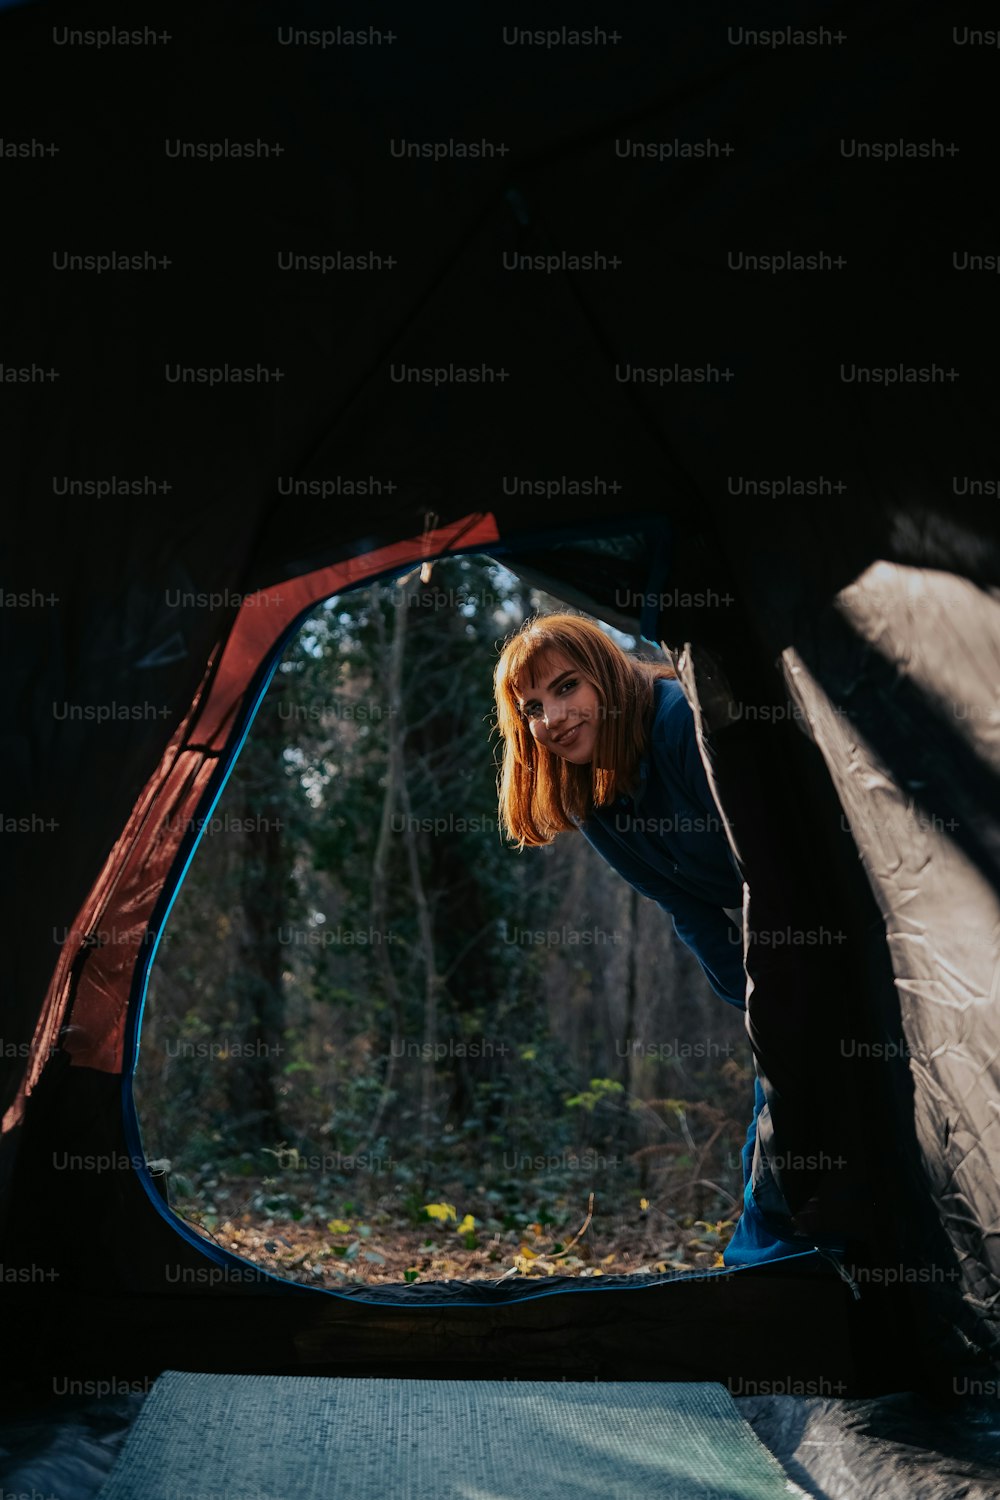 숲속의 텐트 안에 서 있는 여자